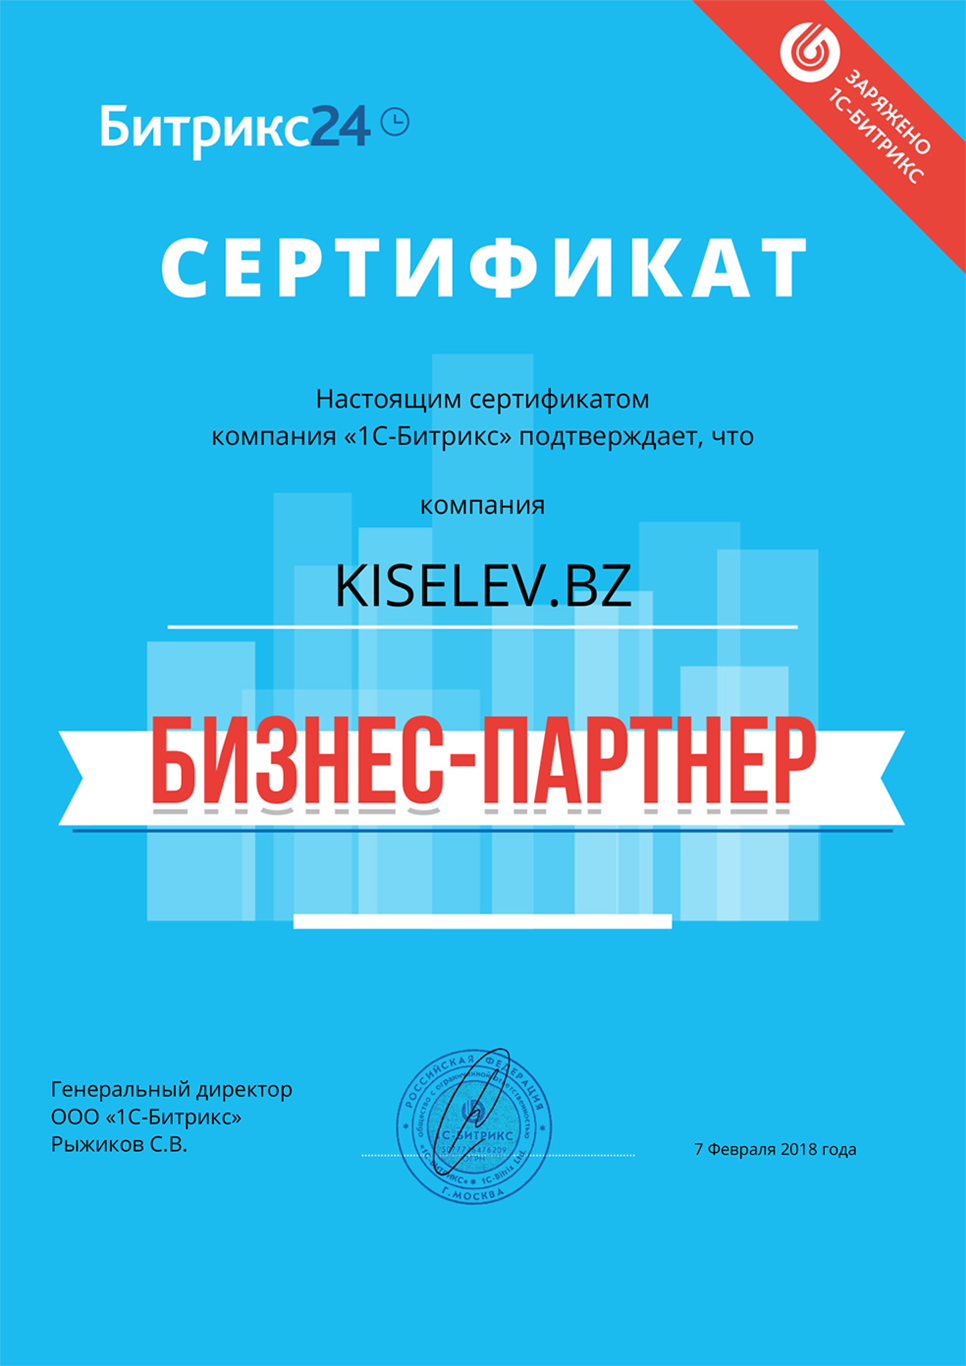 Сертификат партнёра по АМОСРМ в Черняховске